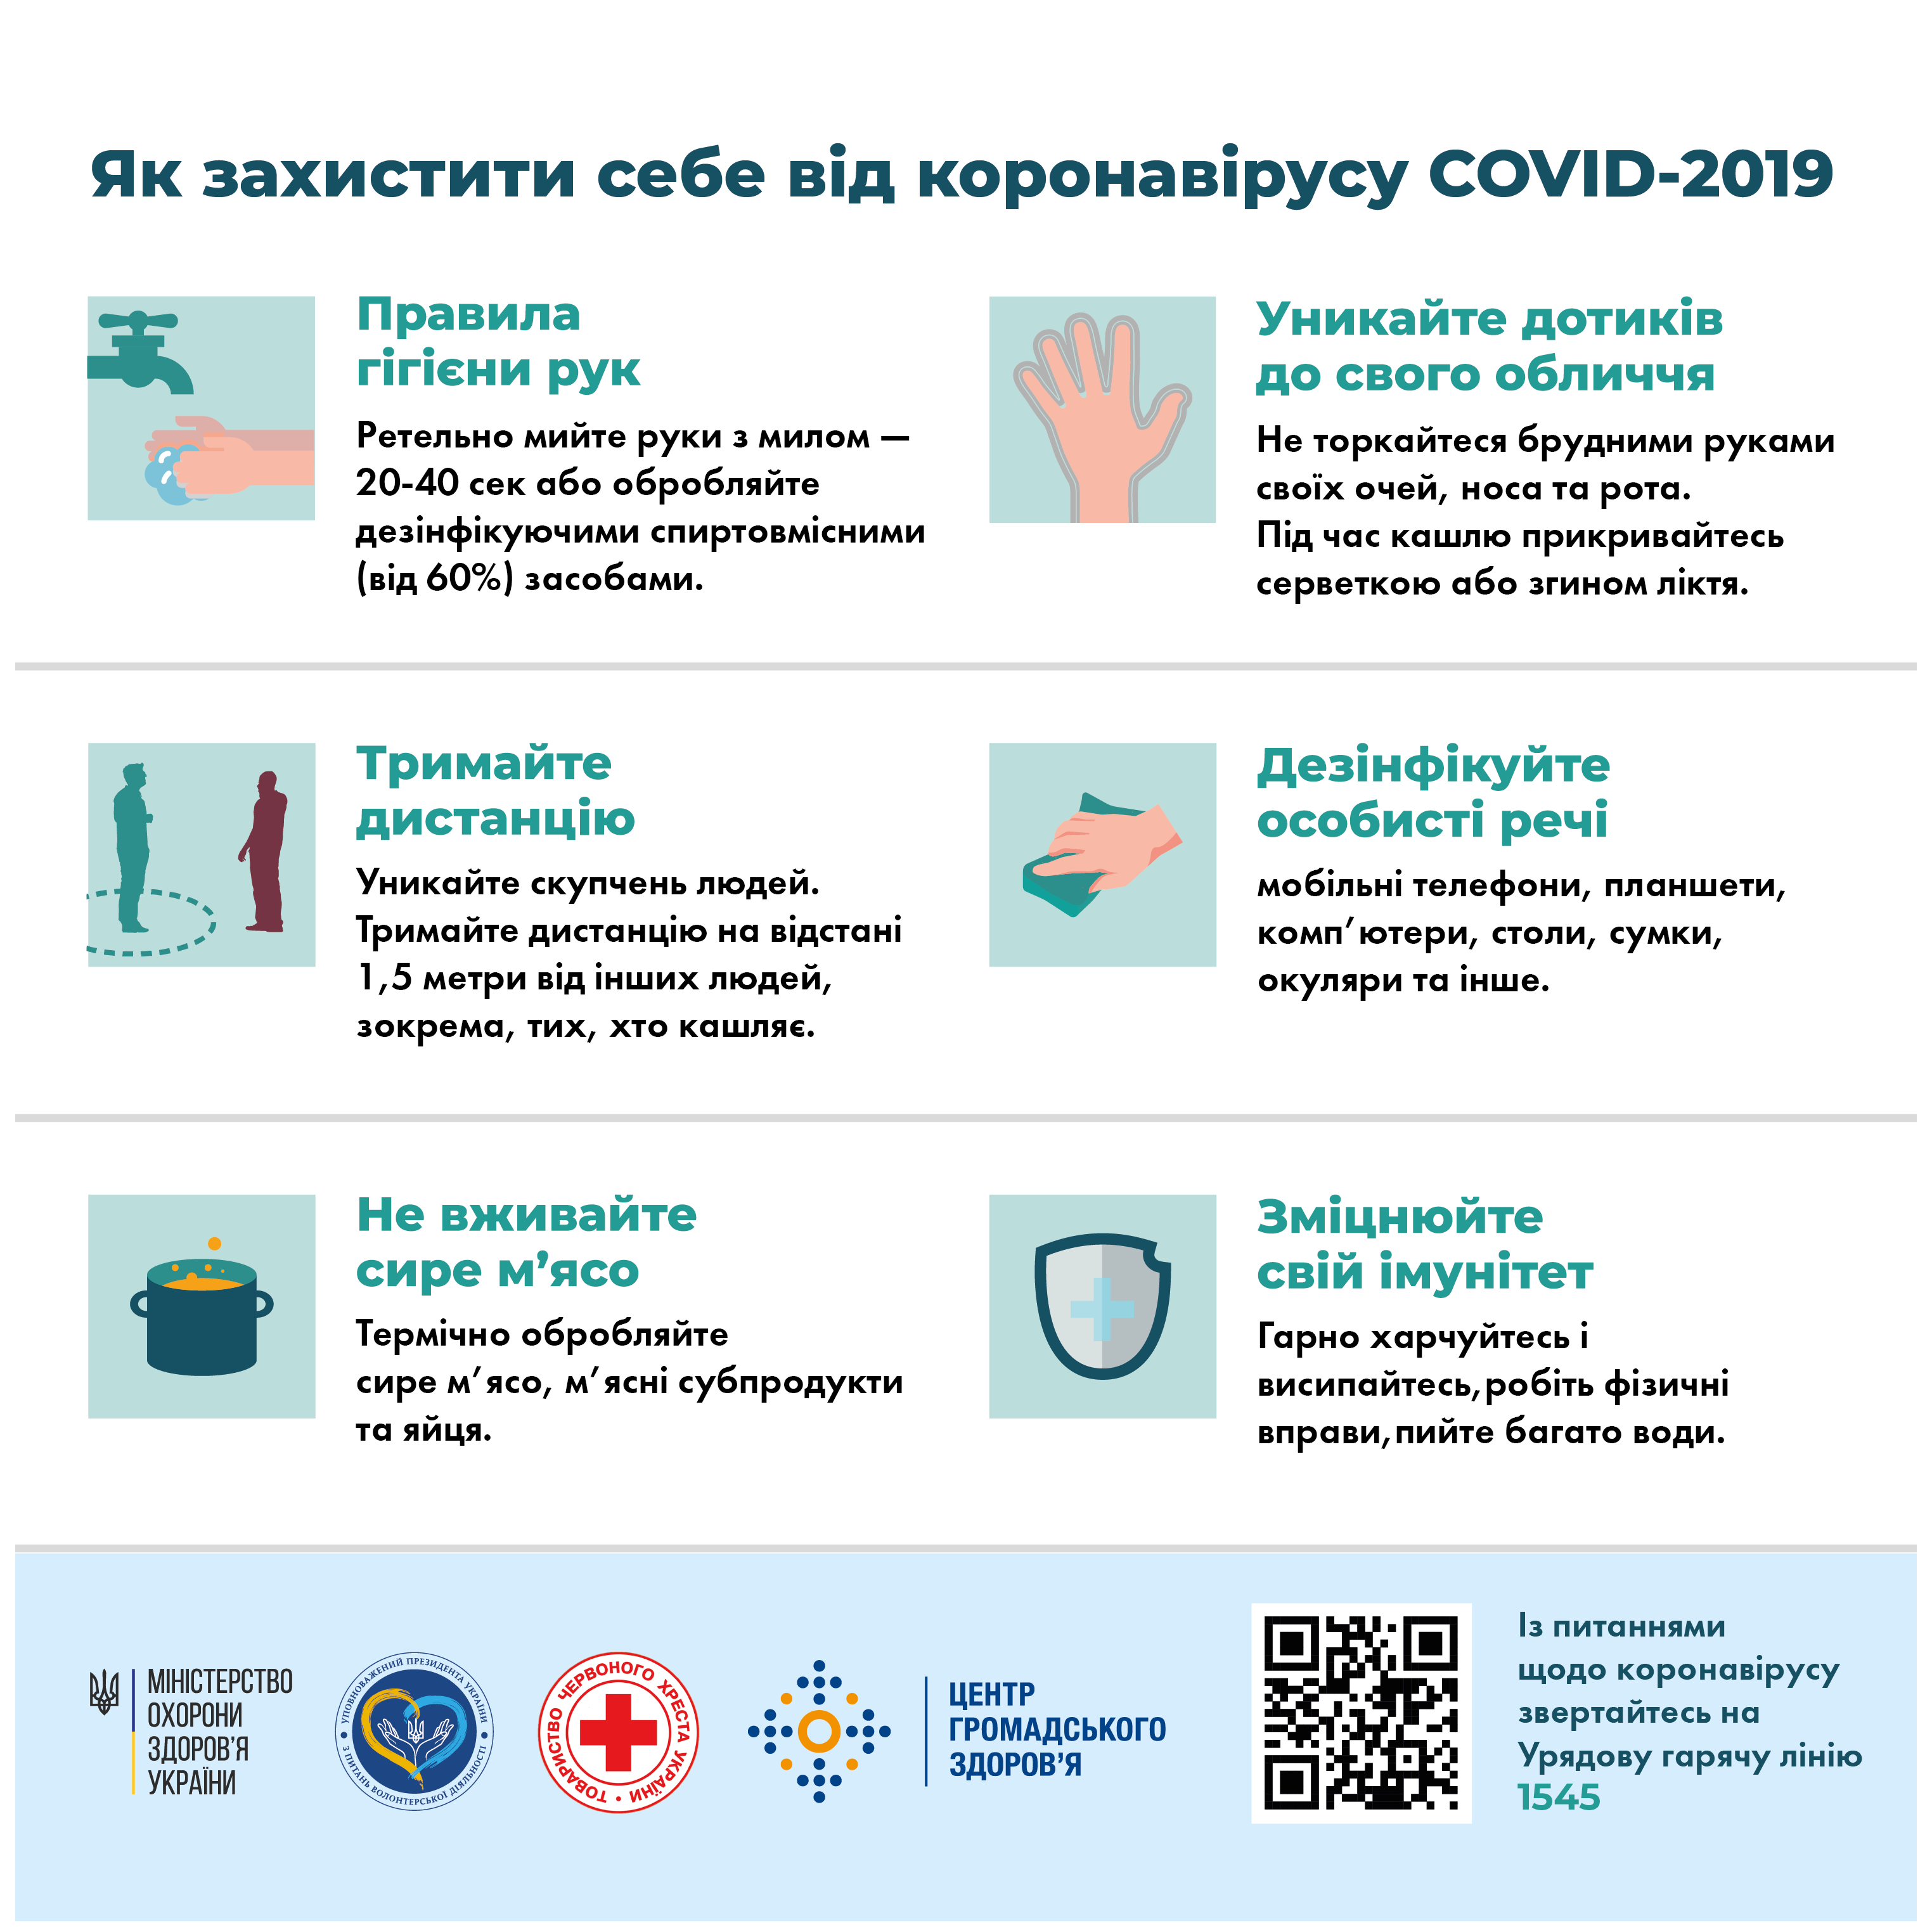 МОЗ інформує: Як захистити себе від коронавірусу COVID-19 | Донецька Обласна Державна адміністрація